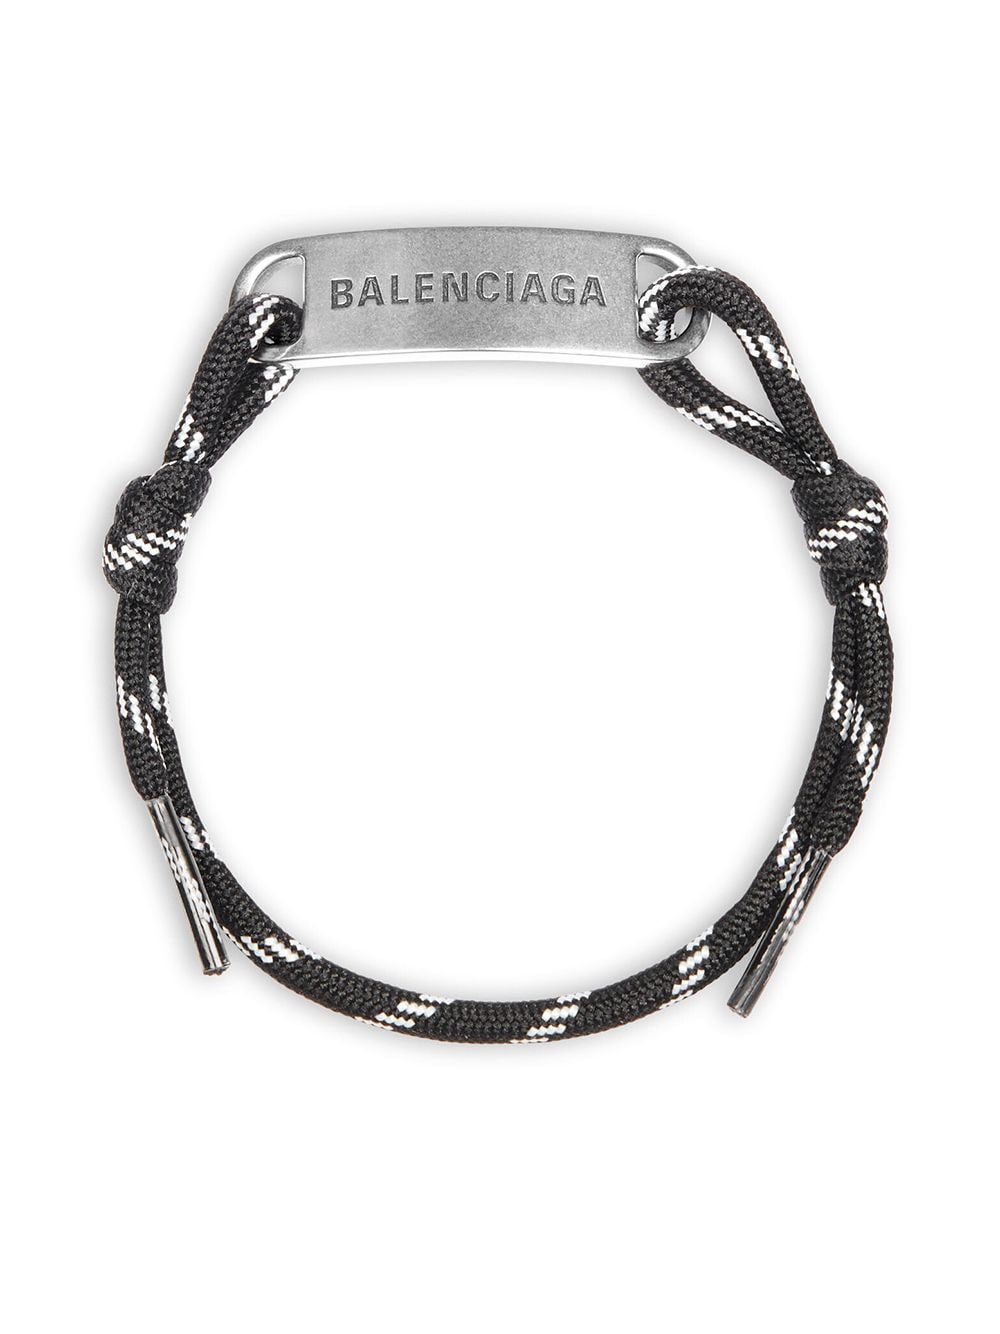 BALENCIAGA Bracciale con cordino in cotone nero e argento con logo Balenciaga